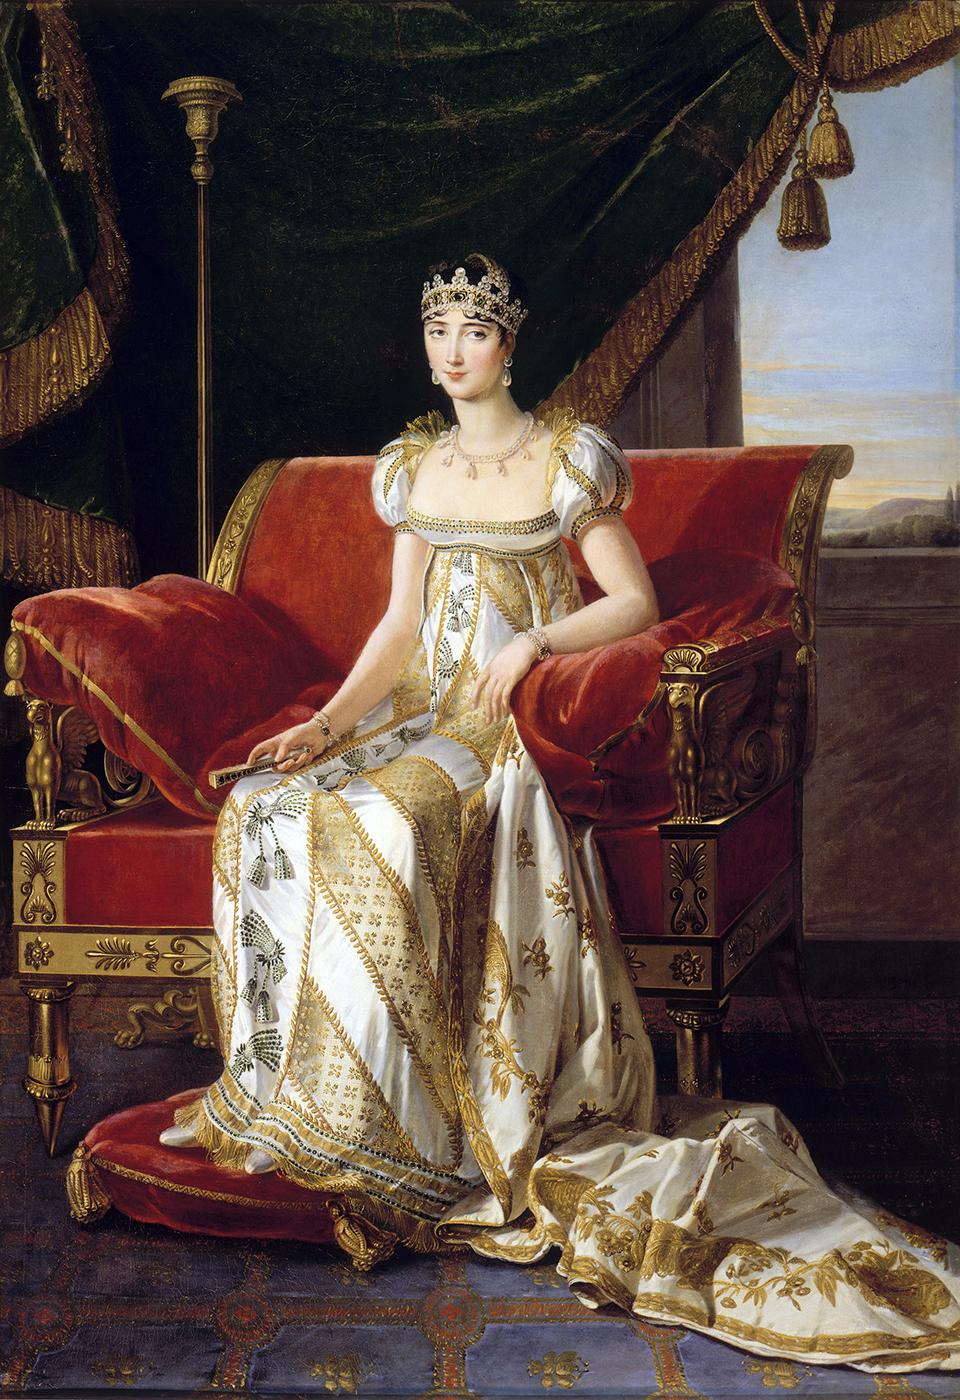 1 NOVEMBRE 1802: PAOLINA BONAPARTE RIMANE VEDOVA ALL'ETÀ DI 22 ANNI